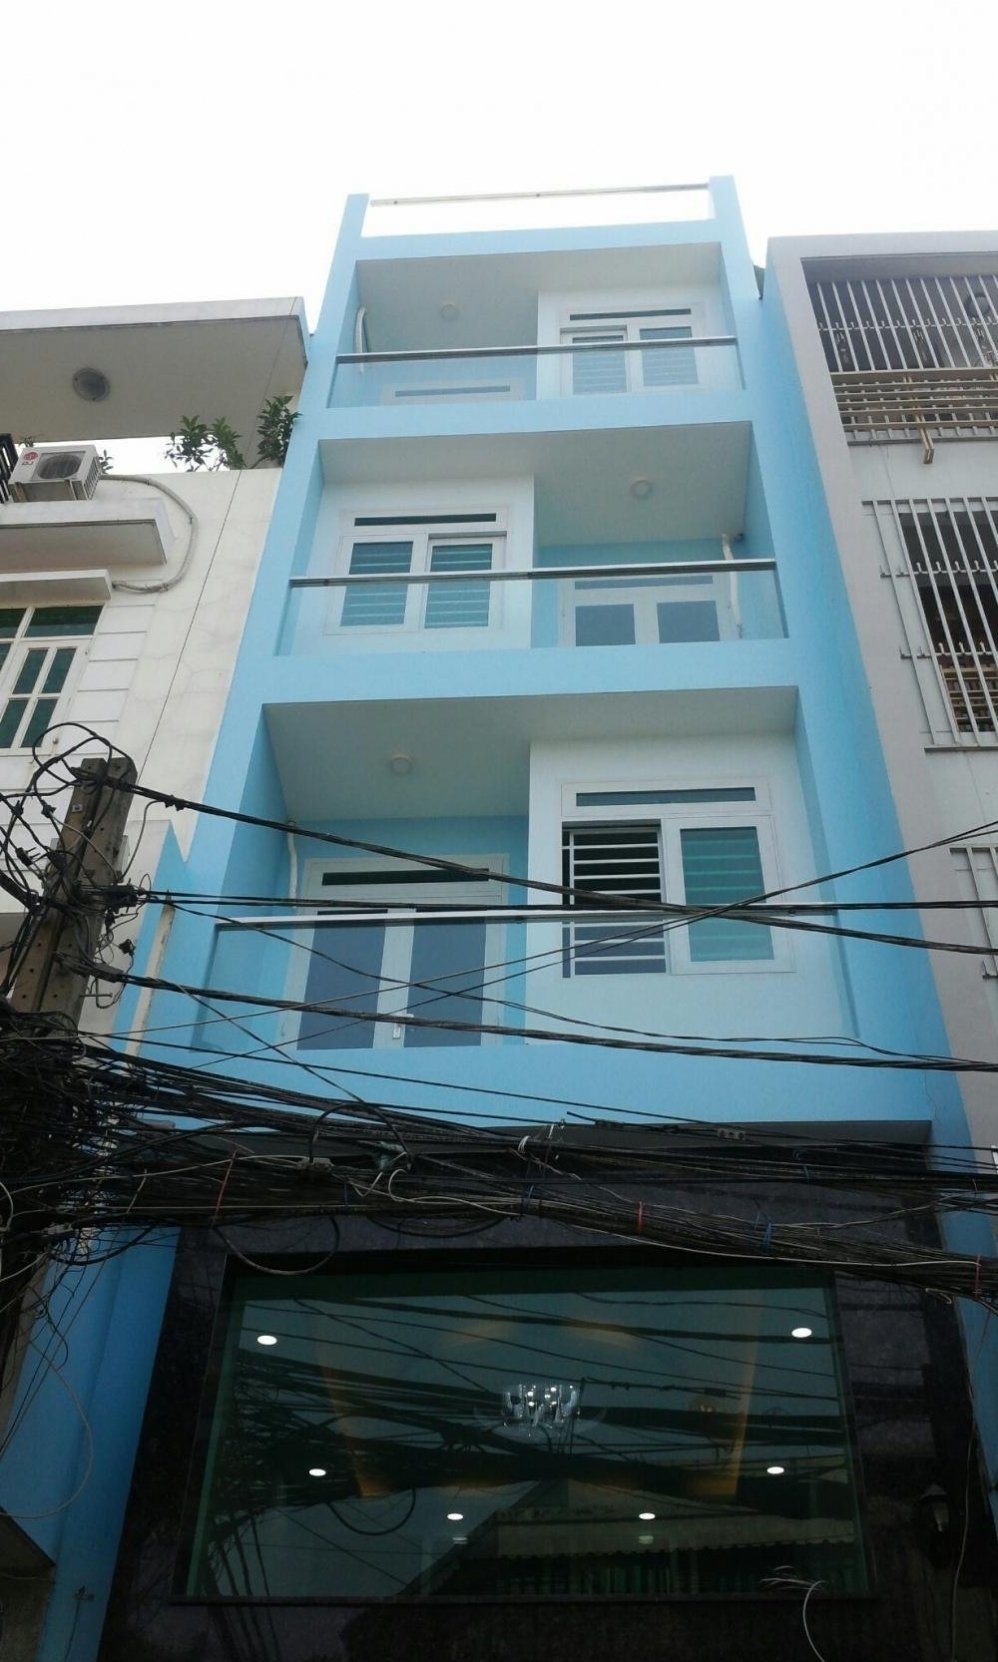  Bán gấp nhà hẻm đường Nguyễn Trãi, Q.5, DT 5 x 13m giá 8,3 tỷ còn bớt lộc.